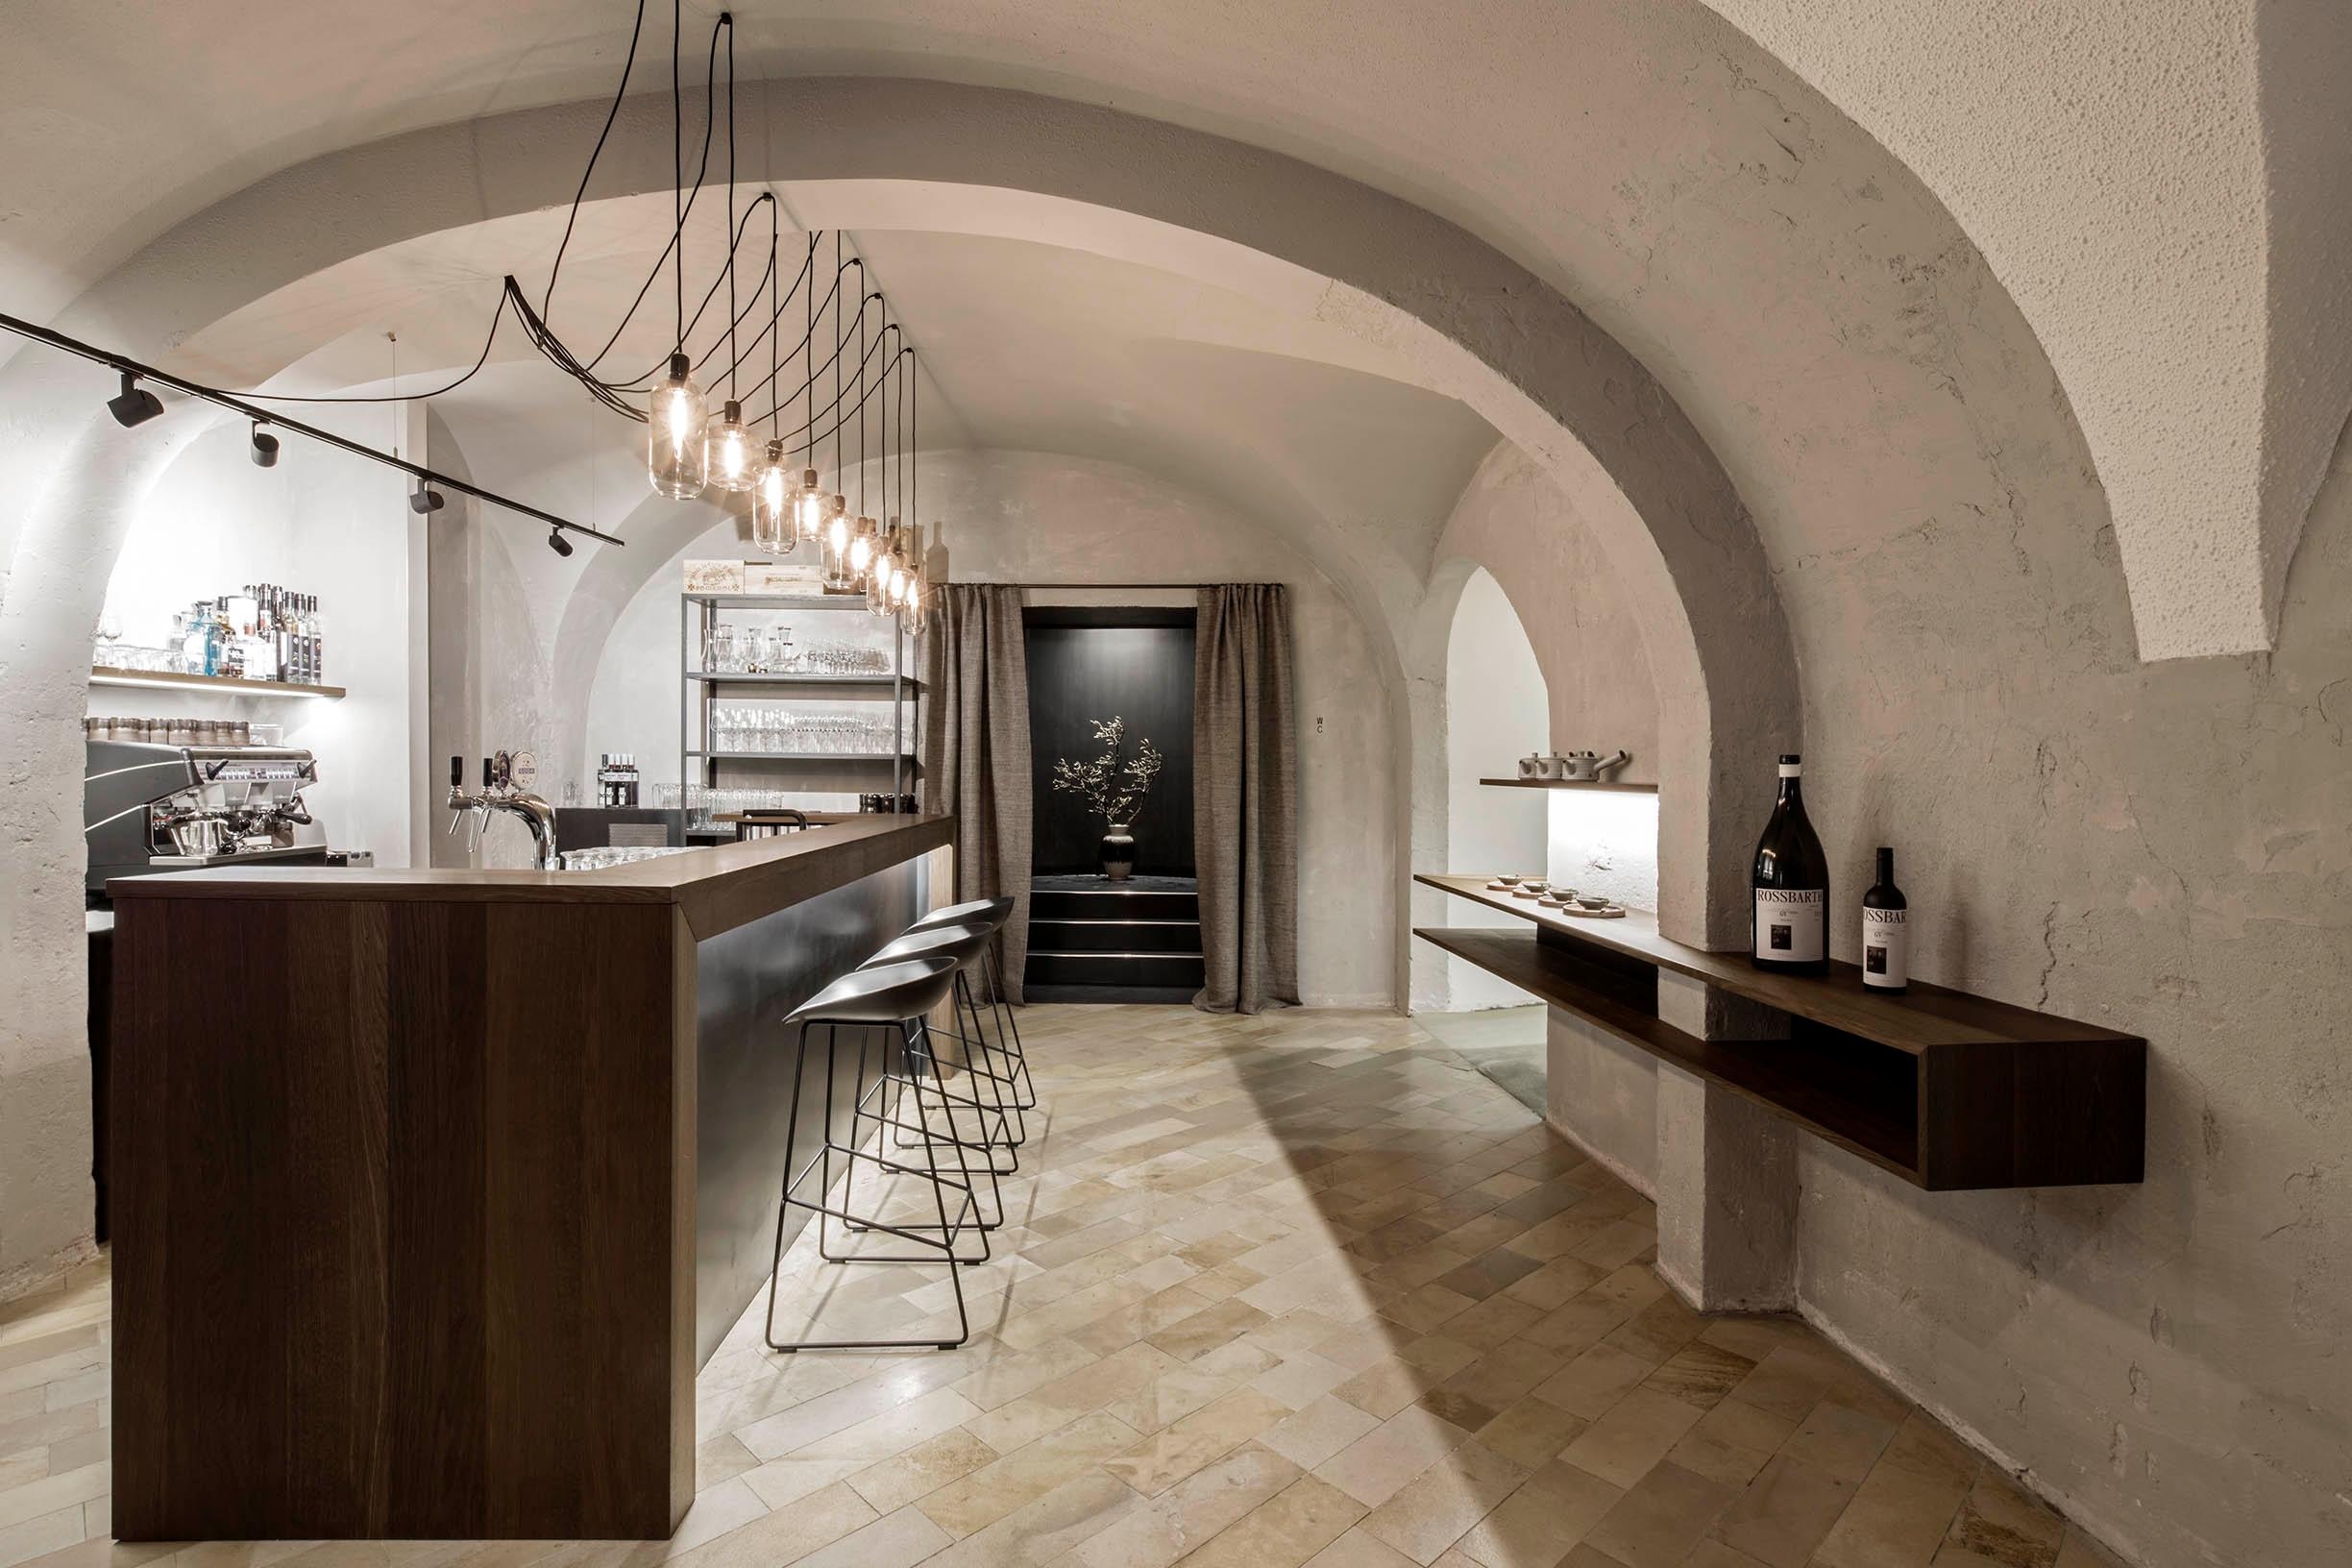 Restaurant Rossbarth
#restaurant #bar #gastronomie #interior #interiordesign #innenarchitektur
Fotos: Monika Nguyen